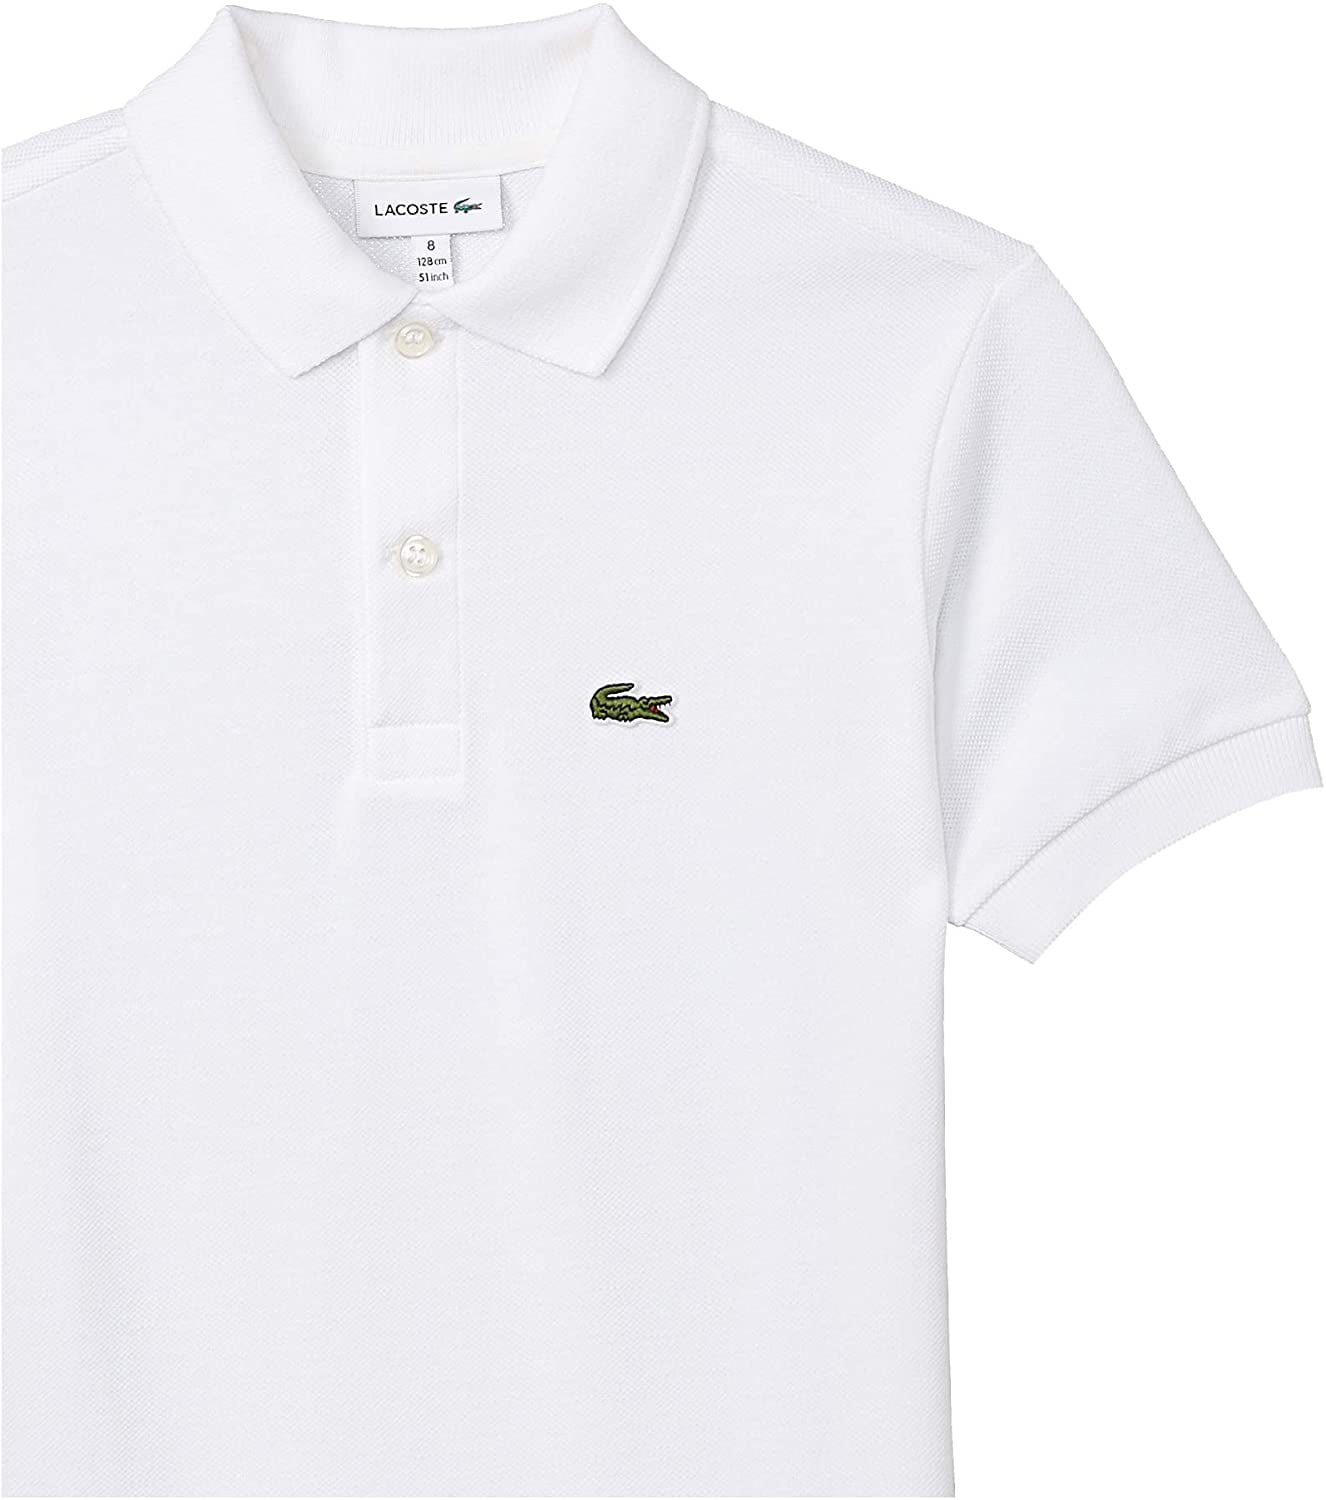 Lacoste Boys Short Sleeve Classic Pique Polo Shirt 